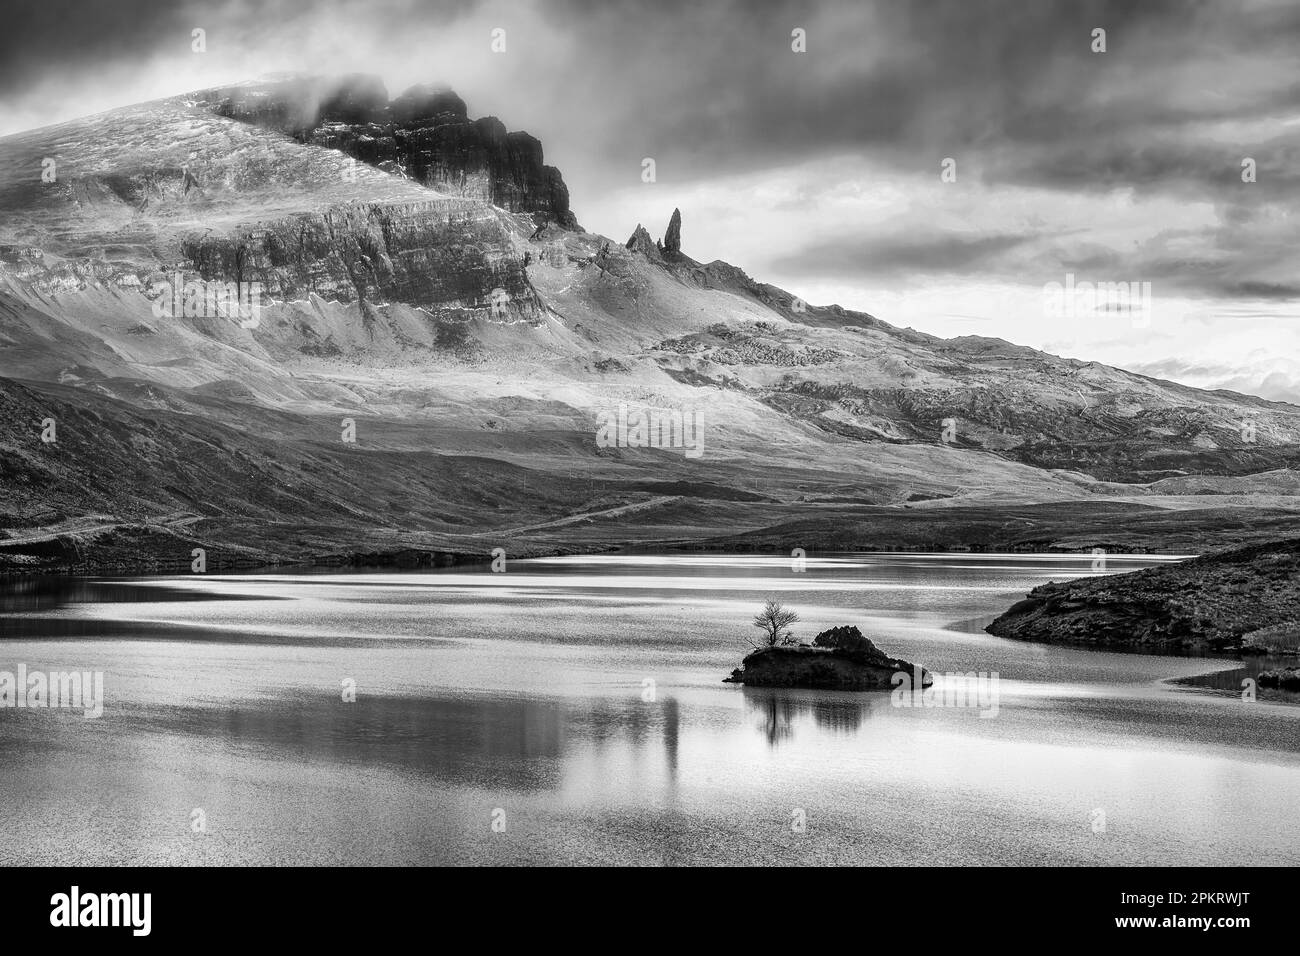 L'ancien homme de Storr au-dessus du Loch Leathan sur l'île de Skye en Écosse Banque D'Images